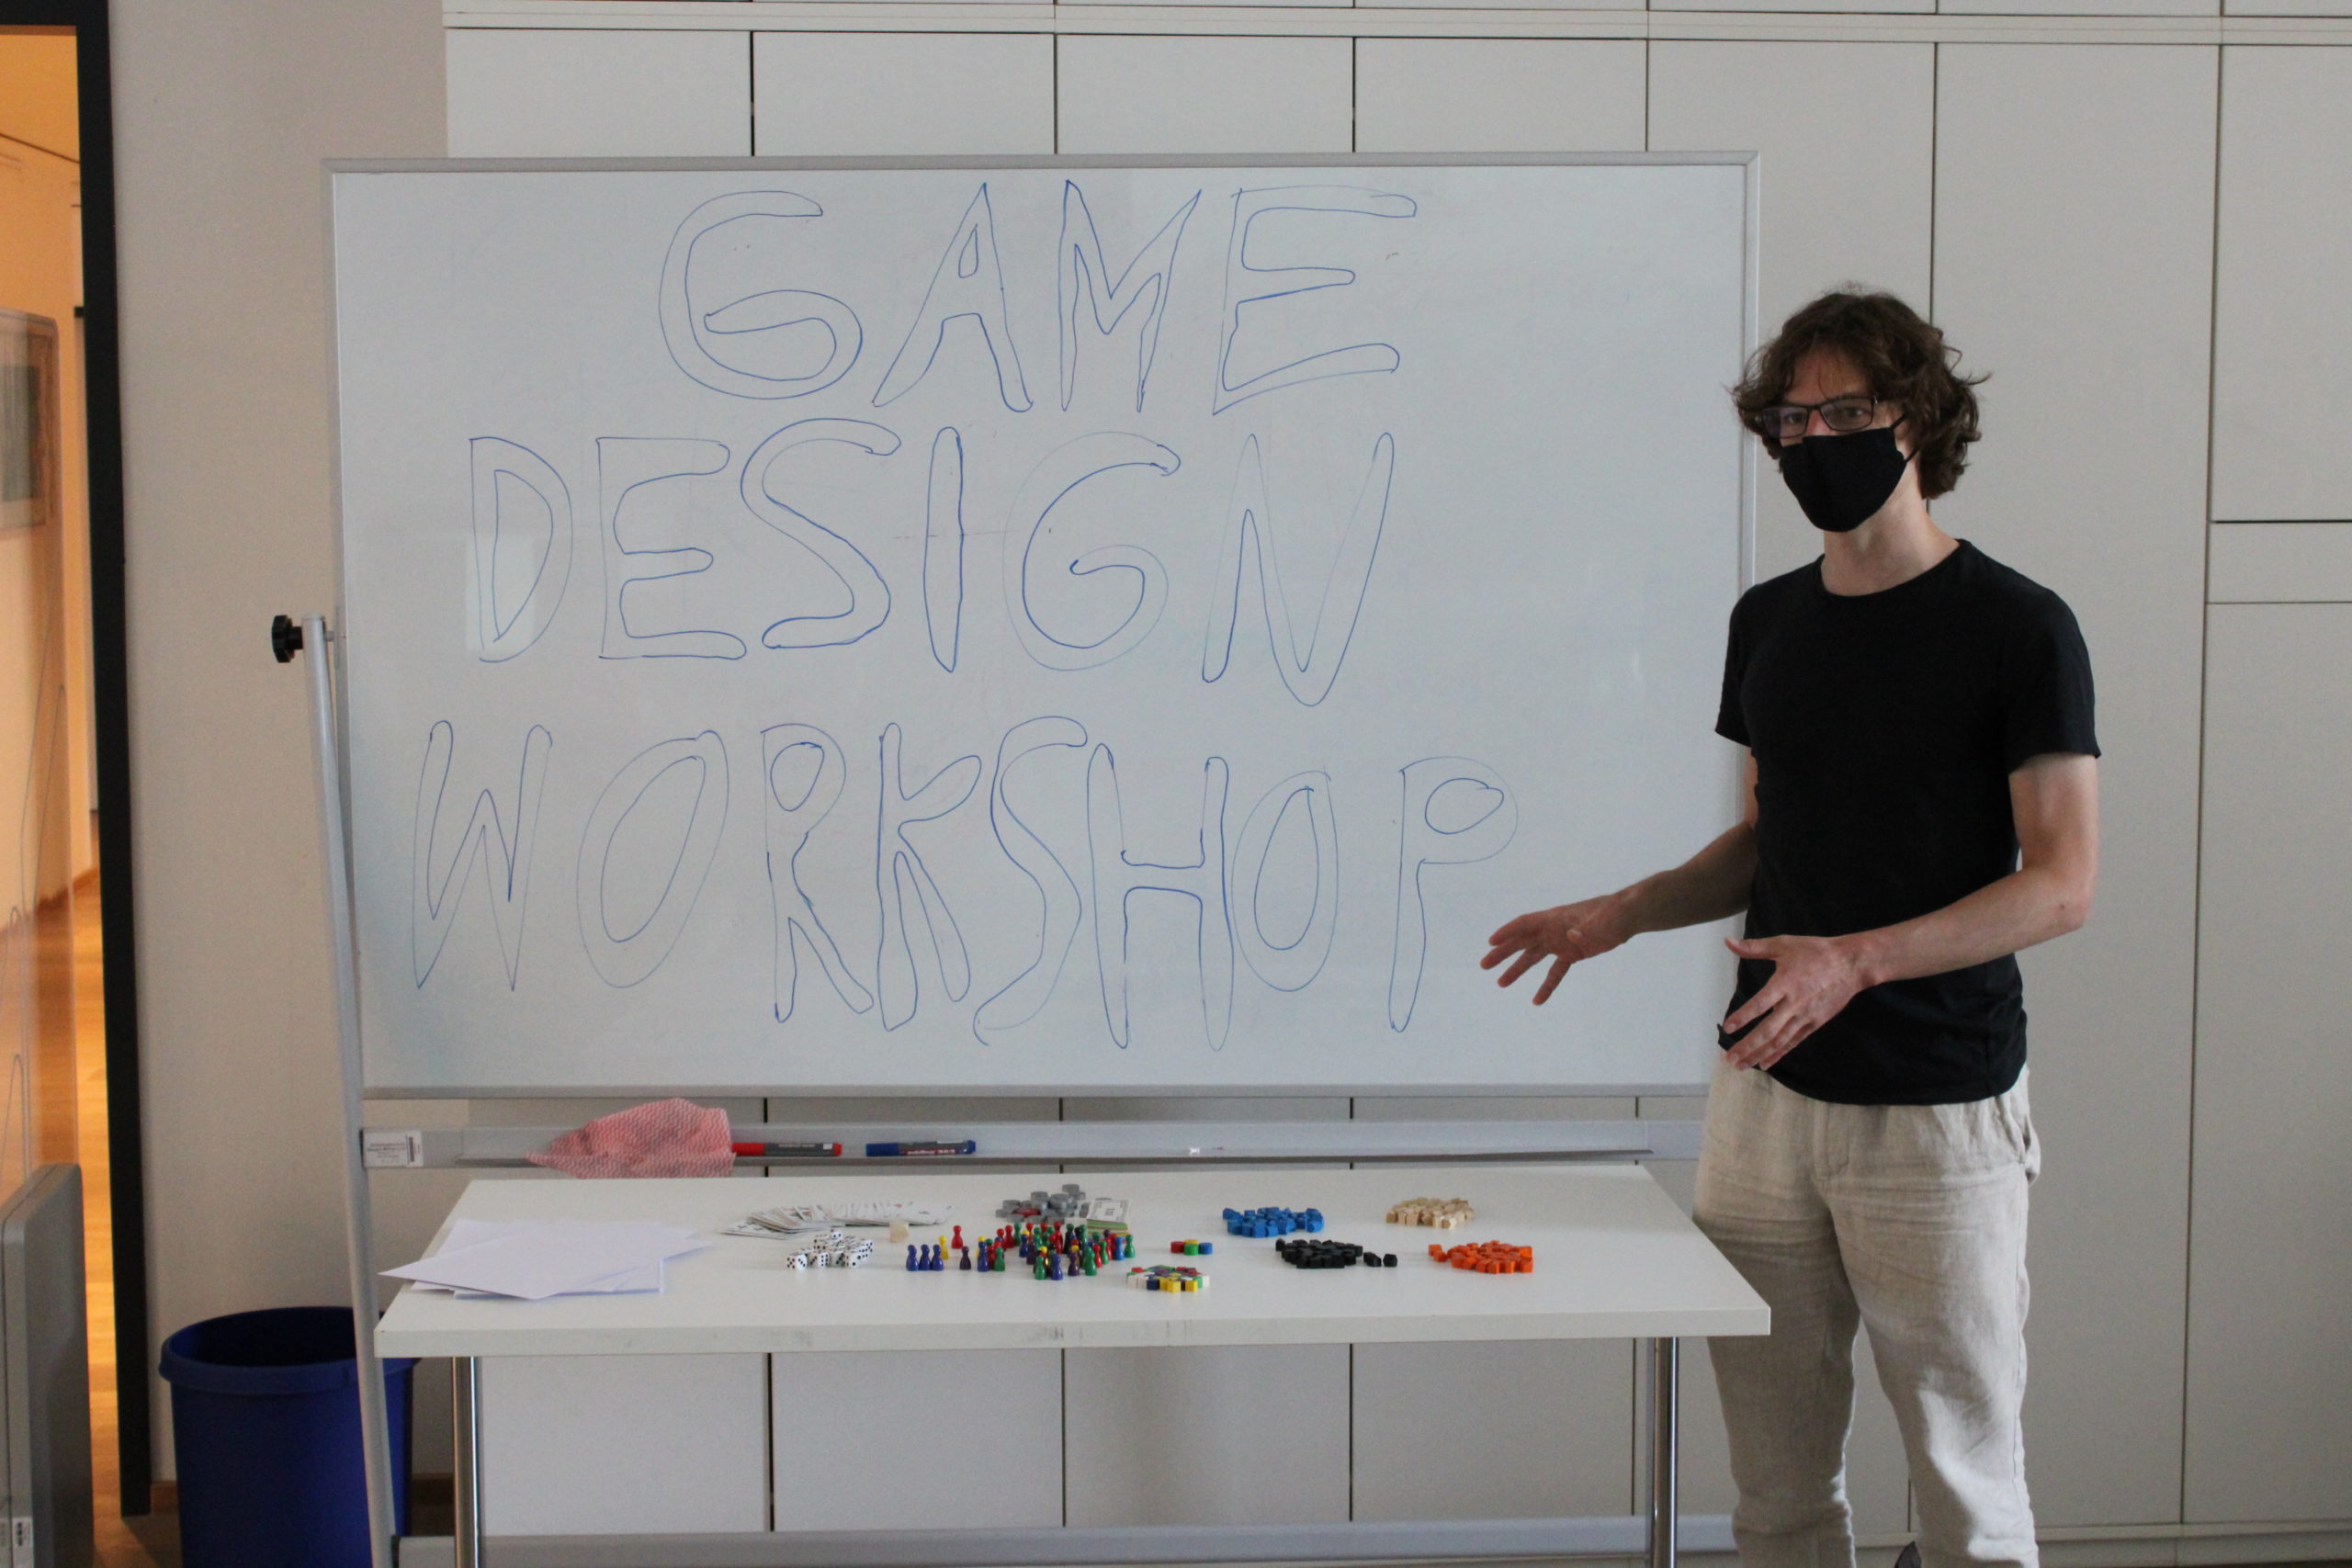 Featured image for “Game Design Workshop in der Bibliothek Kreuztal”